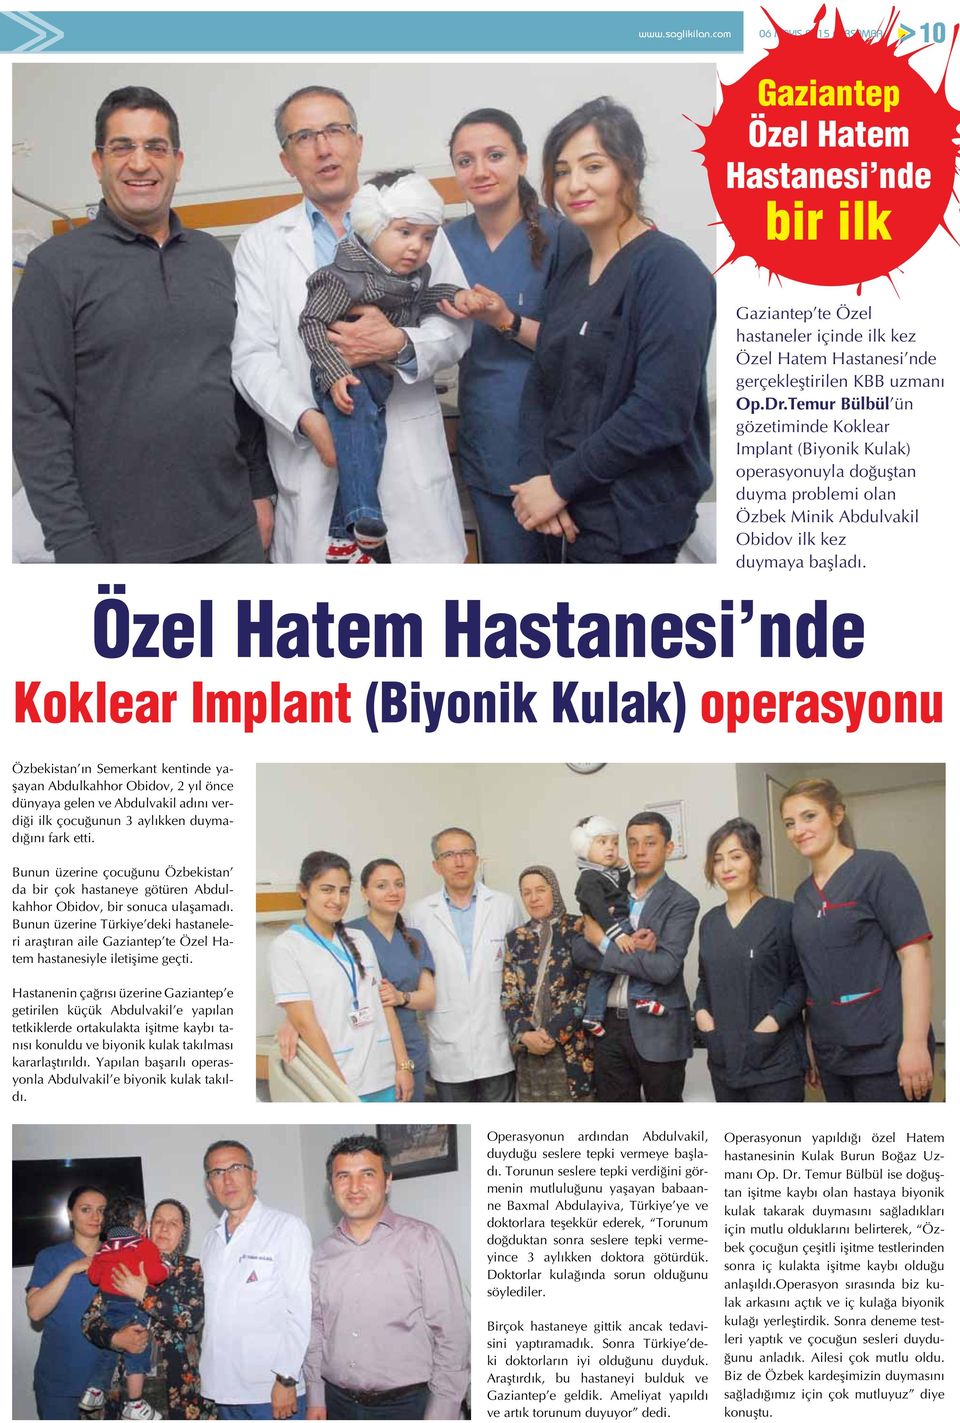 Özel Hatem Hastanesi nde Koklear Implant (Biyonik Kulak) operasyonu Özbekistan ın Semerkant kentinde yaşayan Abdulkahhor Obidov, 2 yıl önce dünyaya gelen ve Abdulvakil adını verdiği ilk çocuğunun 3